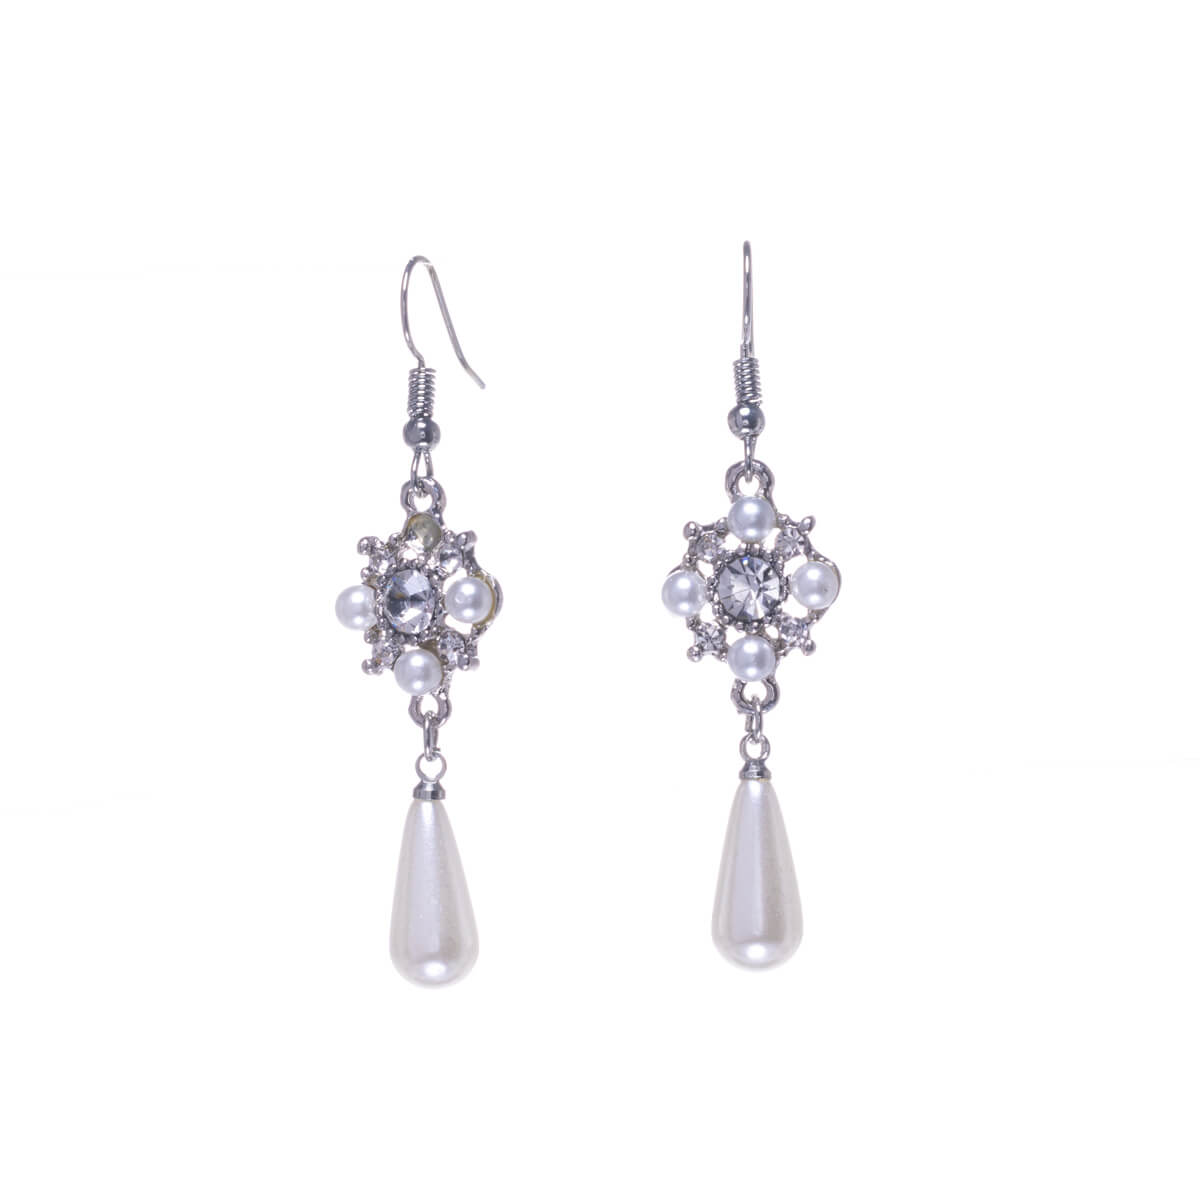 Stone hanging pearl earrings